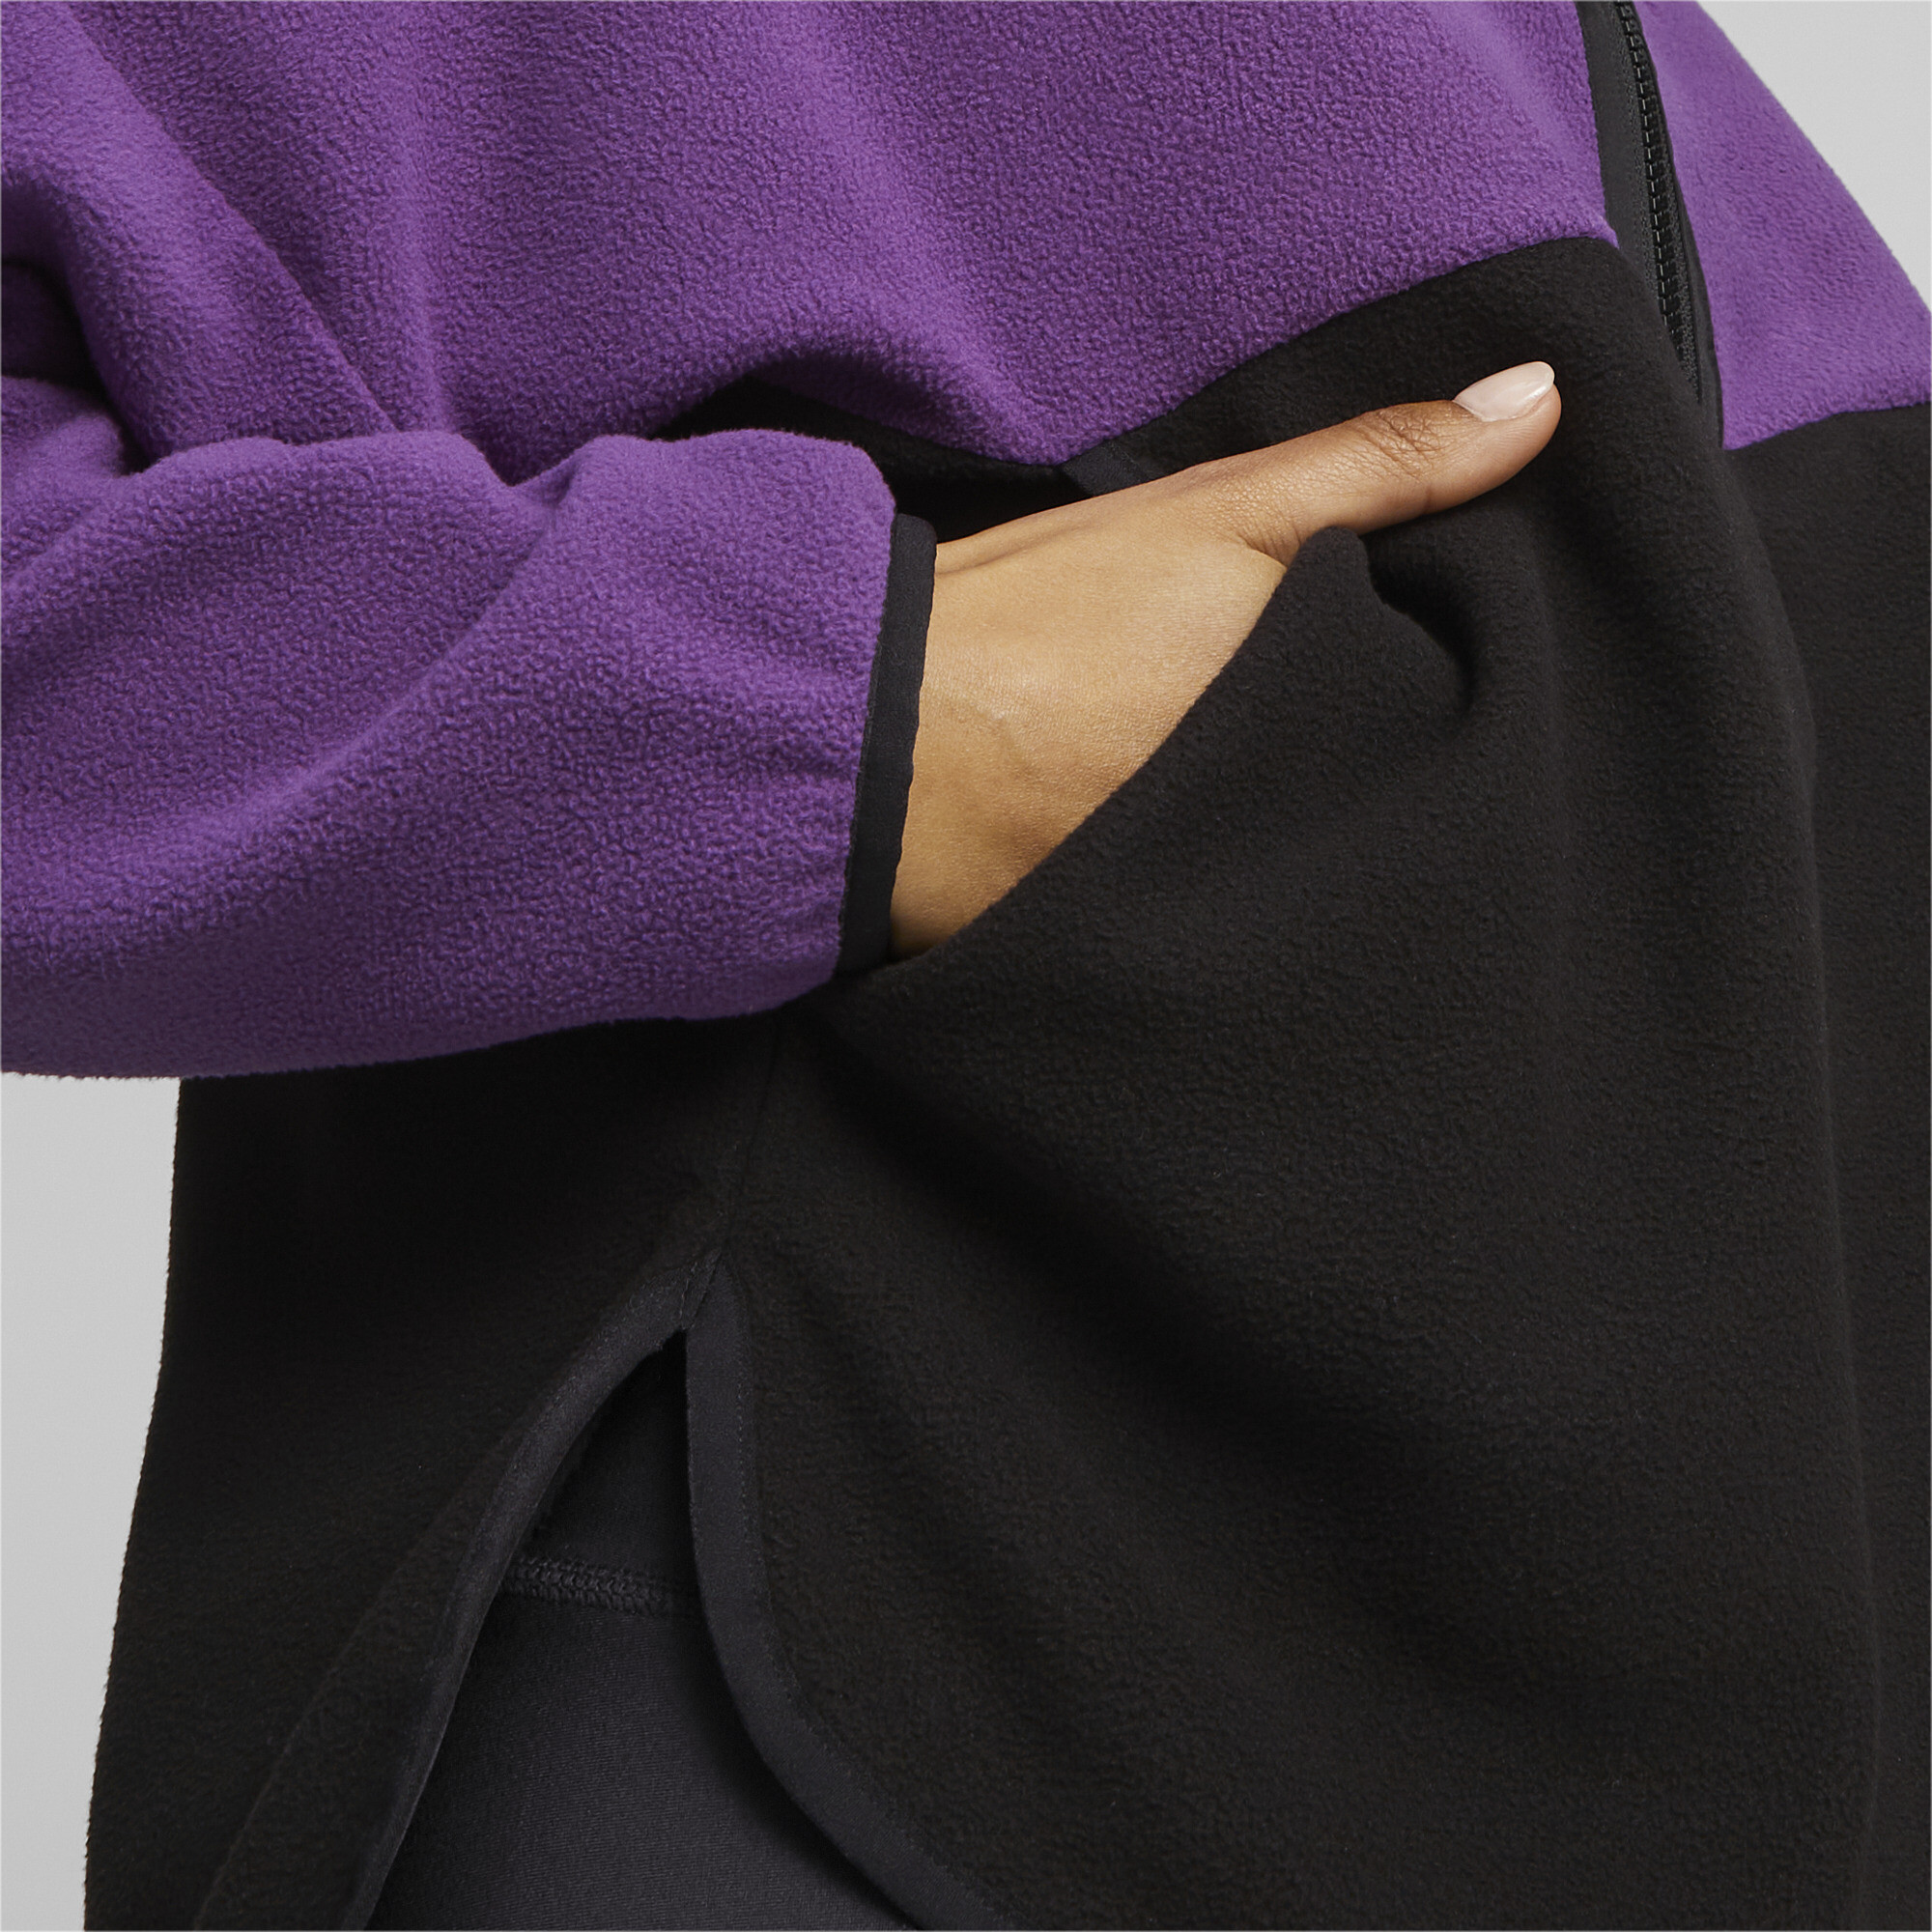 Women's PUMA Fit Training Polar Fleece Top In Purple, Size 2XL